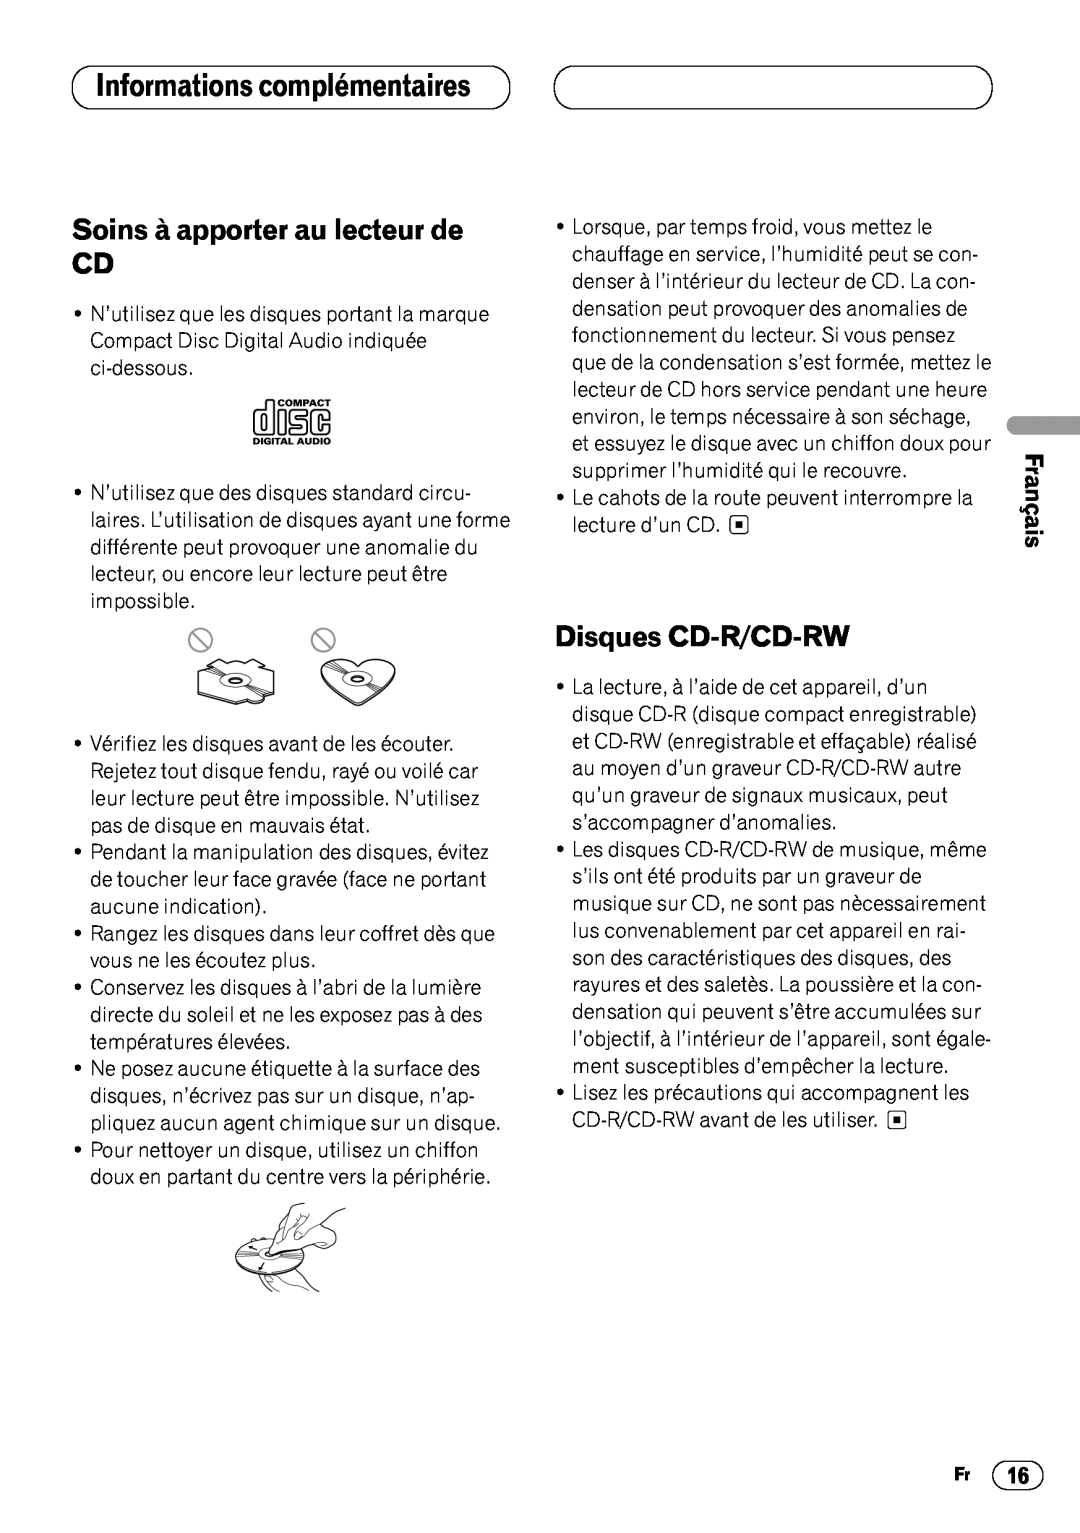 Pioneer DEH-3400 Informations complémentaires, Soins à apporter au lecteur de CD, Disques CD-R/CD-RW, English, Français 